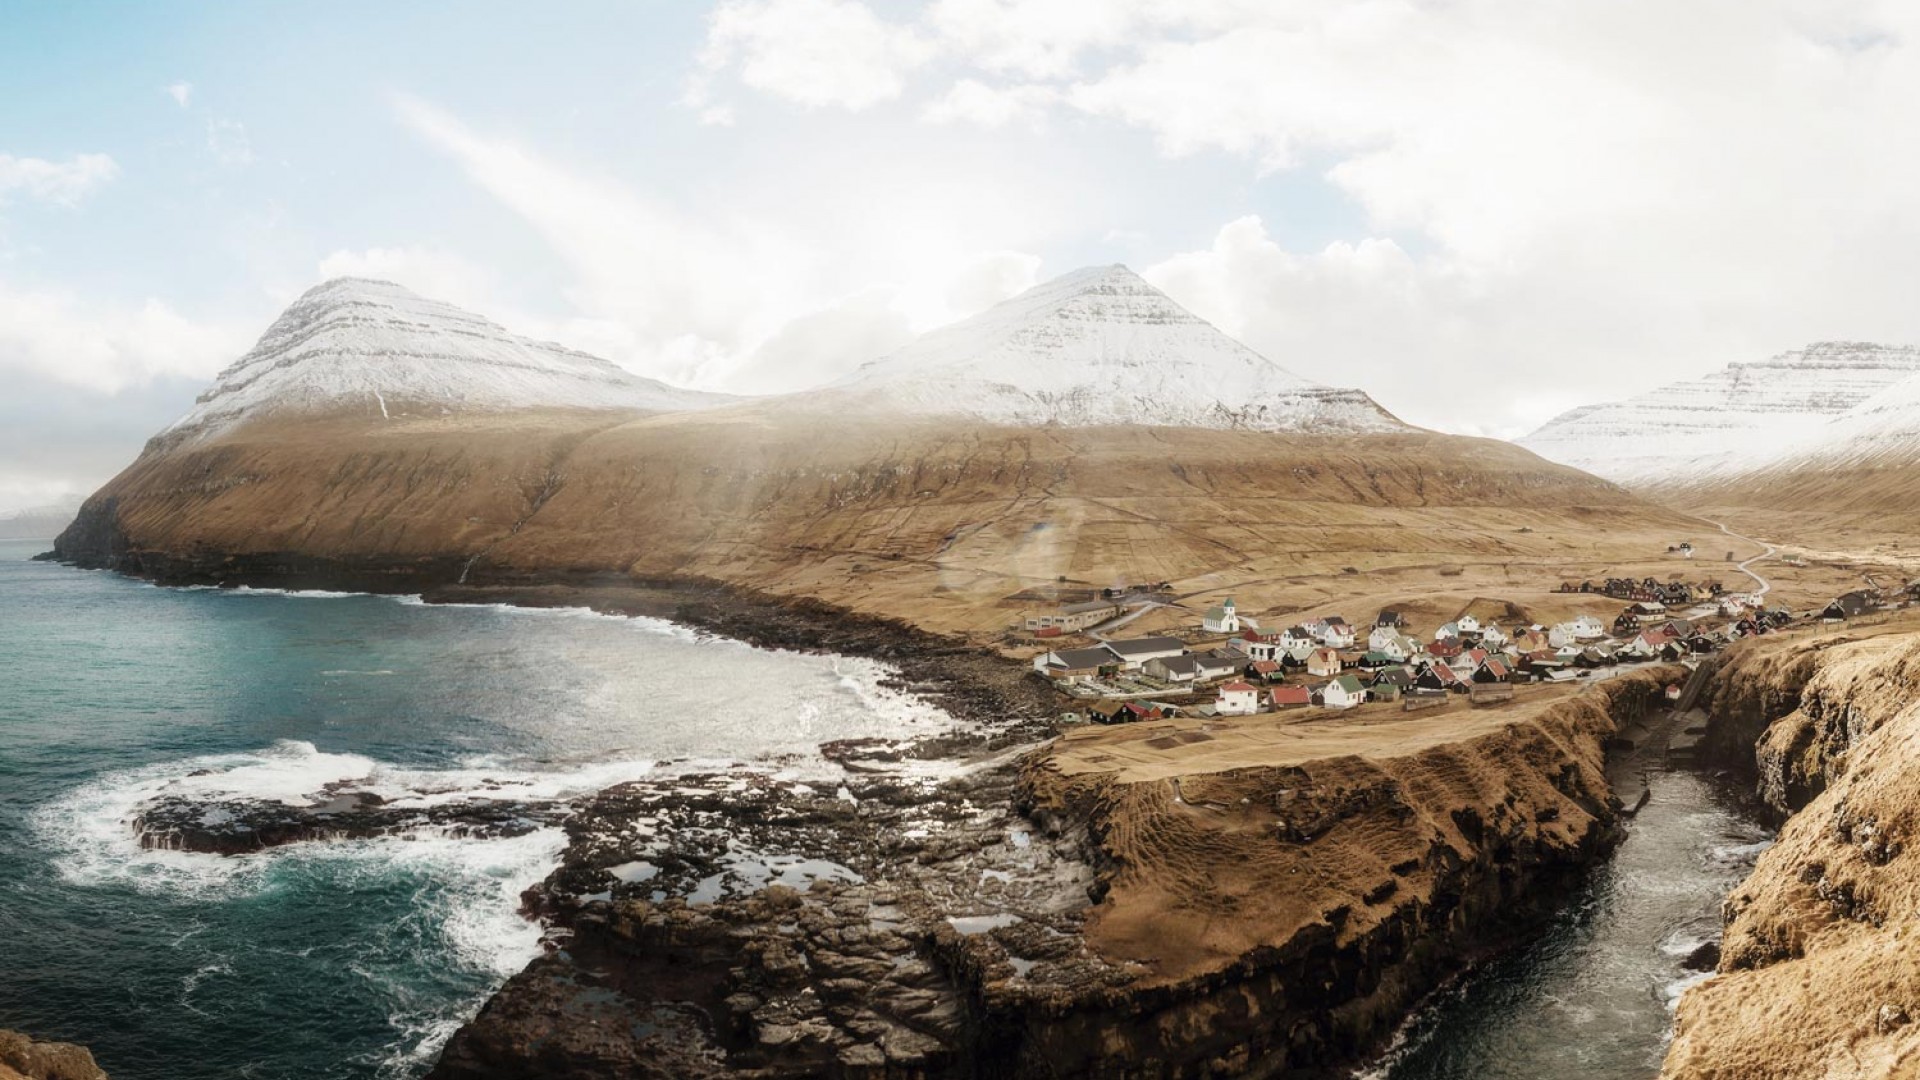 A Remote Village In The Faroe Islands - Gjógv , HD Wallpaper & Backgrounds